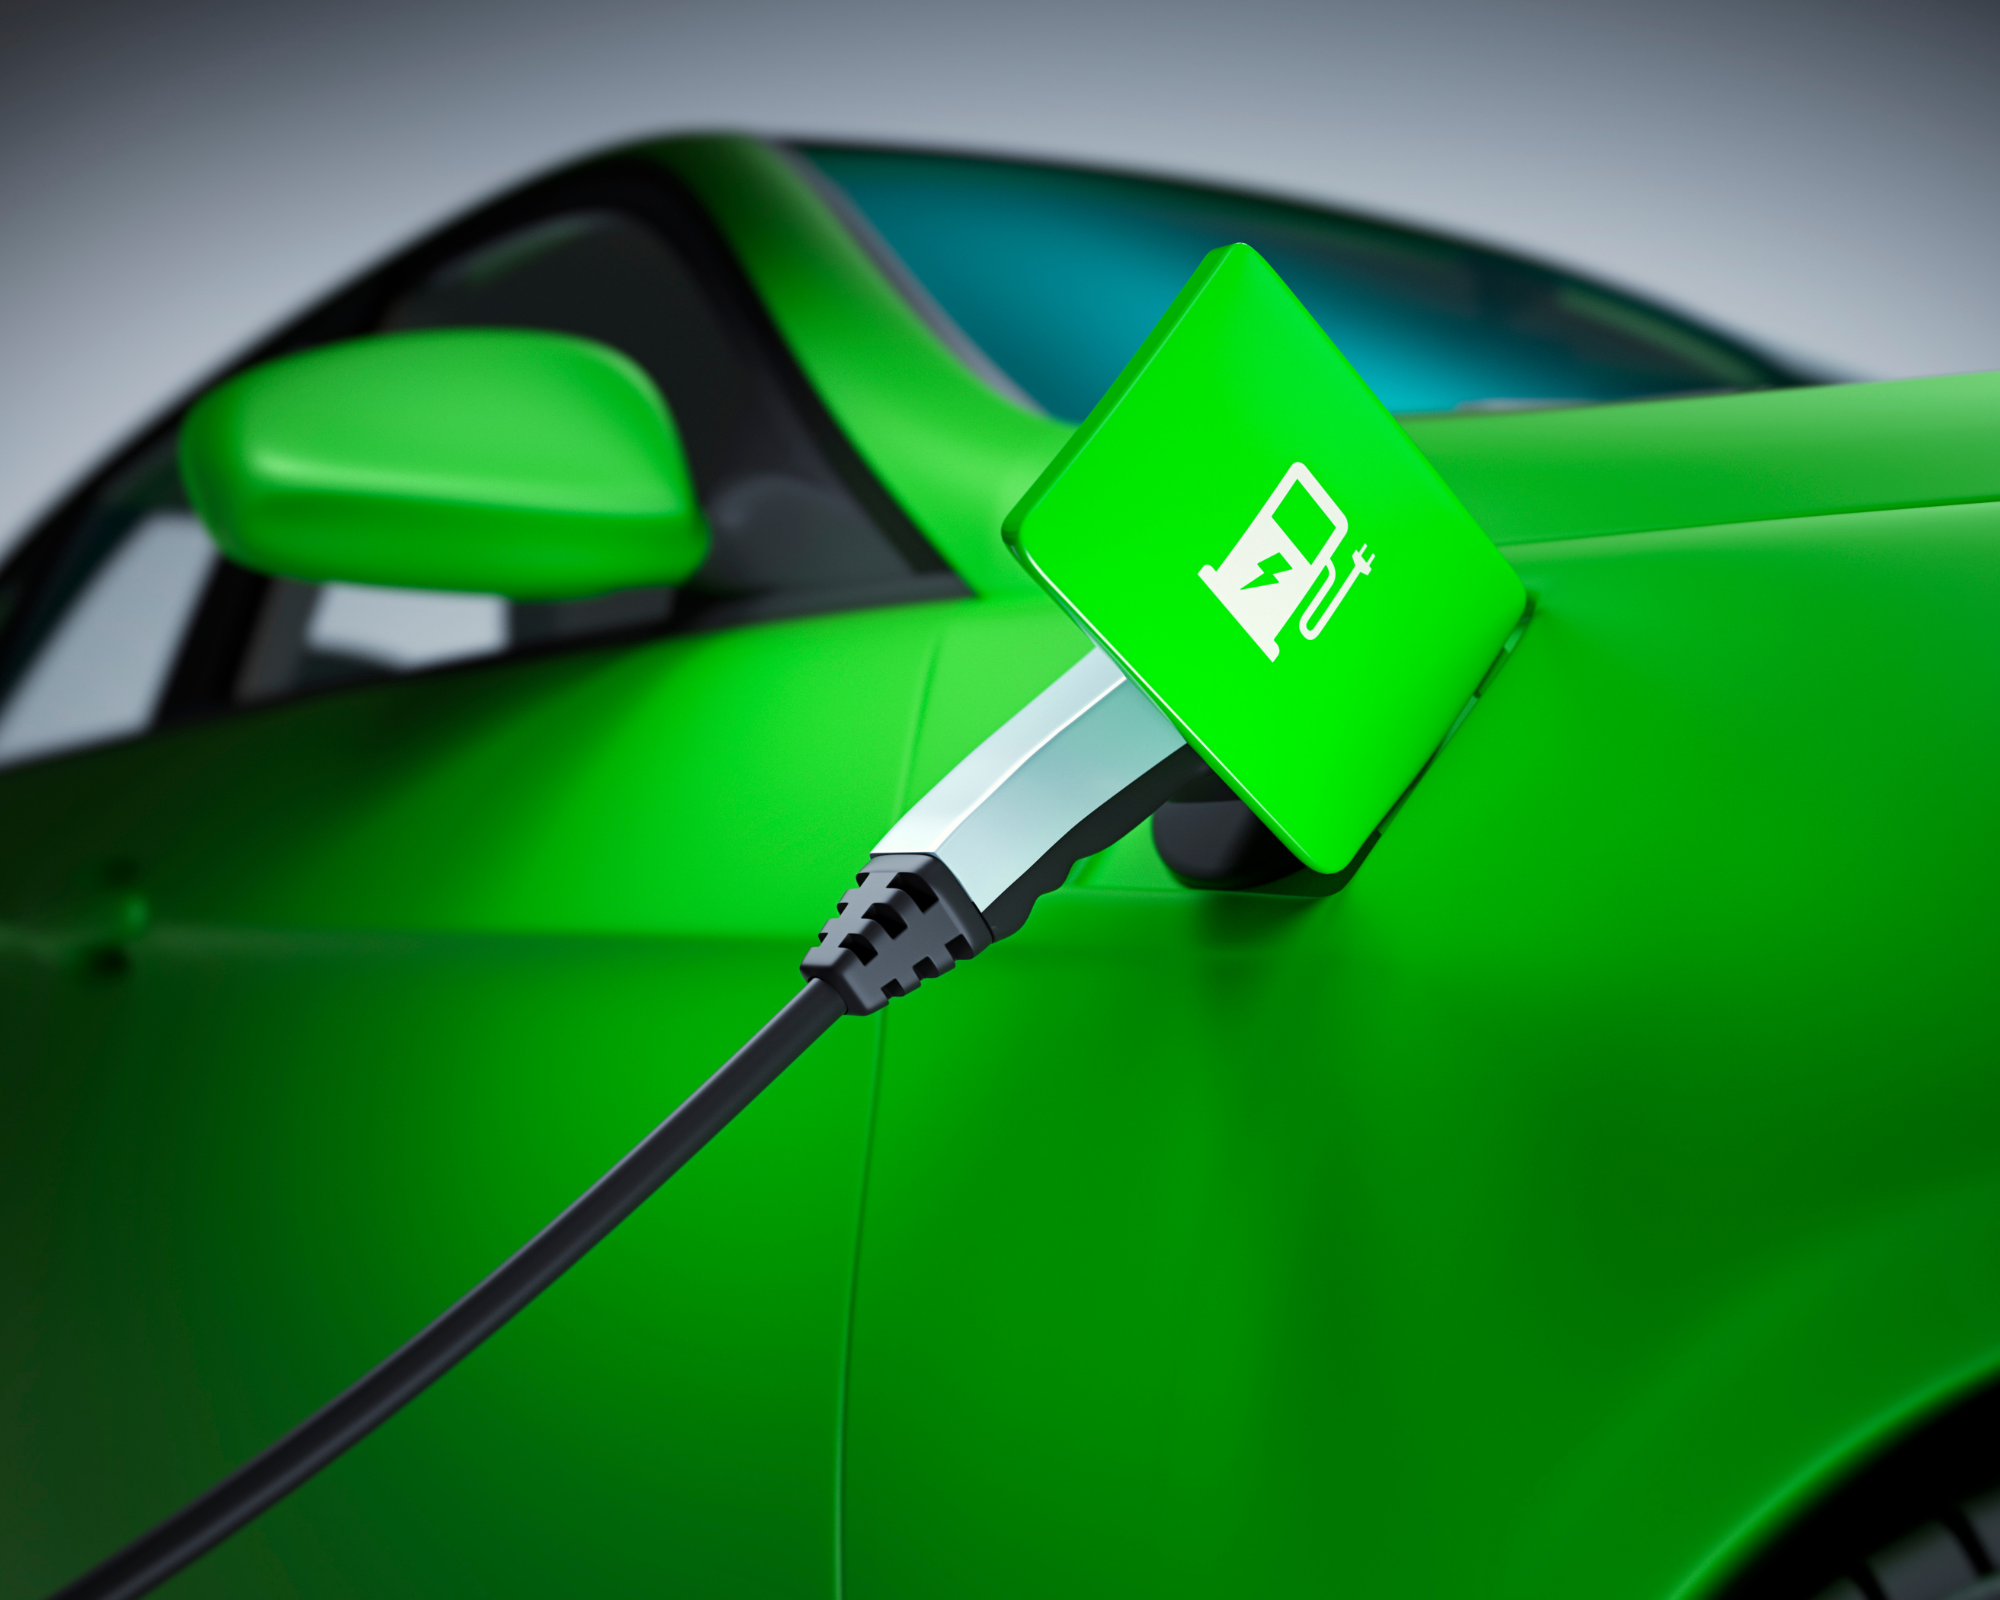 El MG4 se convierte en el coche eléctrico más vendido en abril - Electrico .es